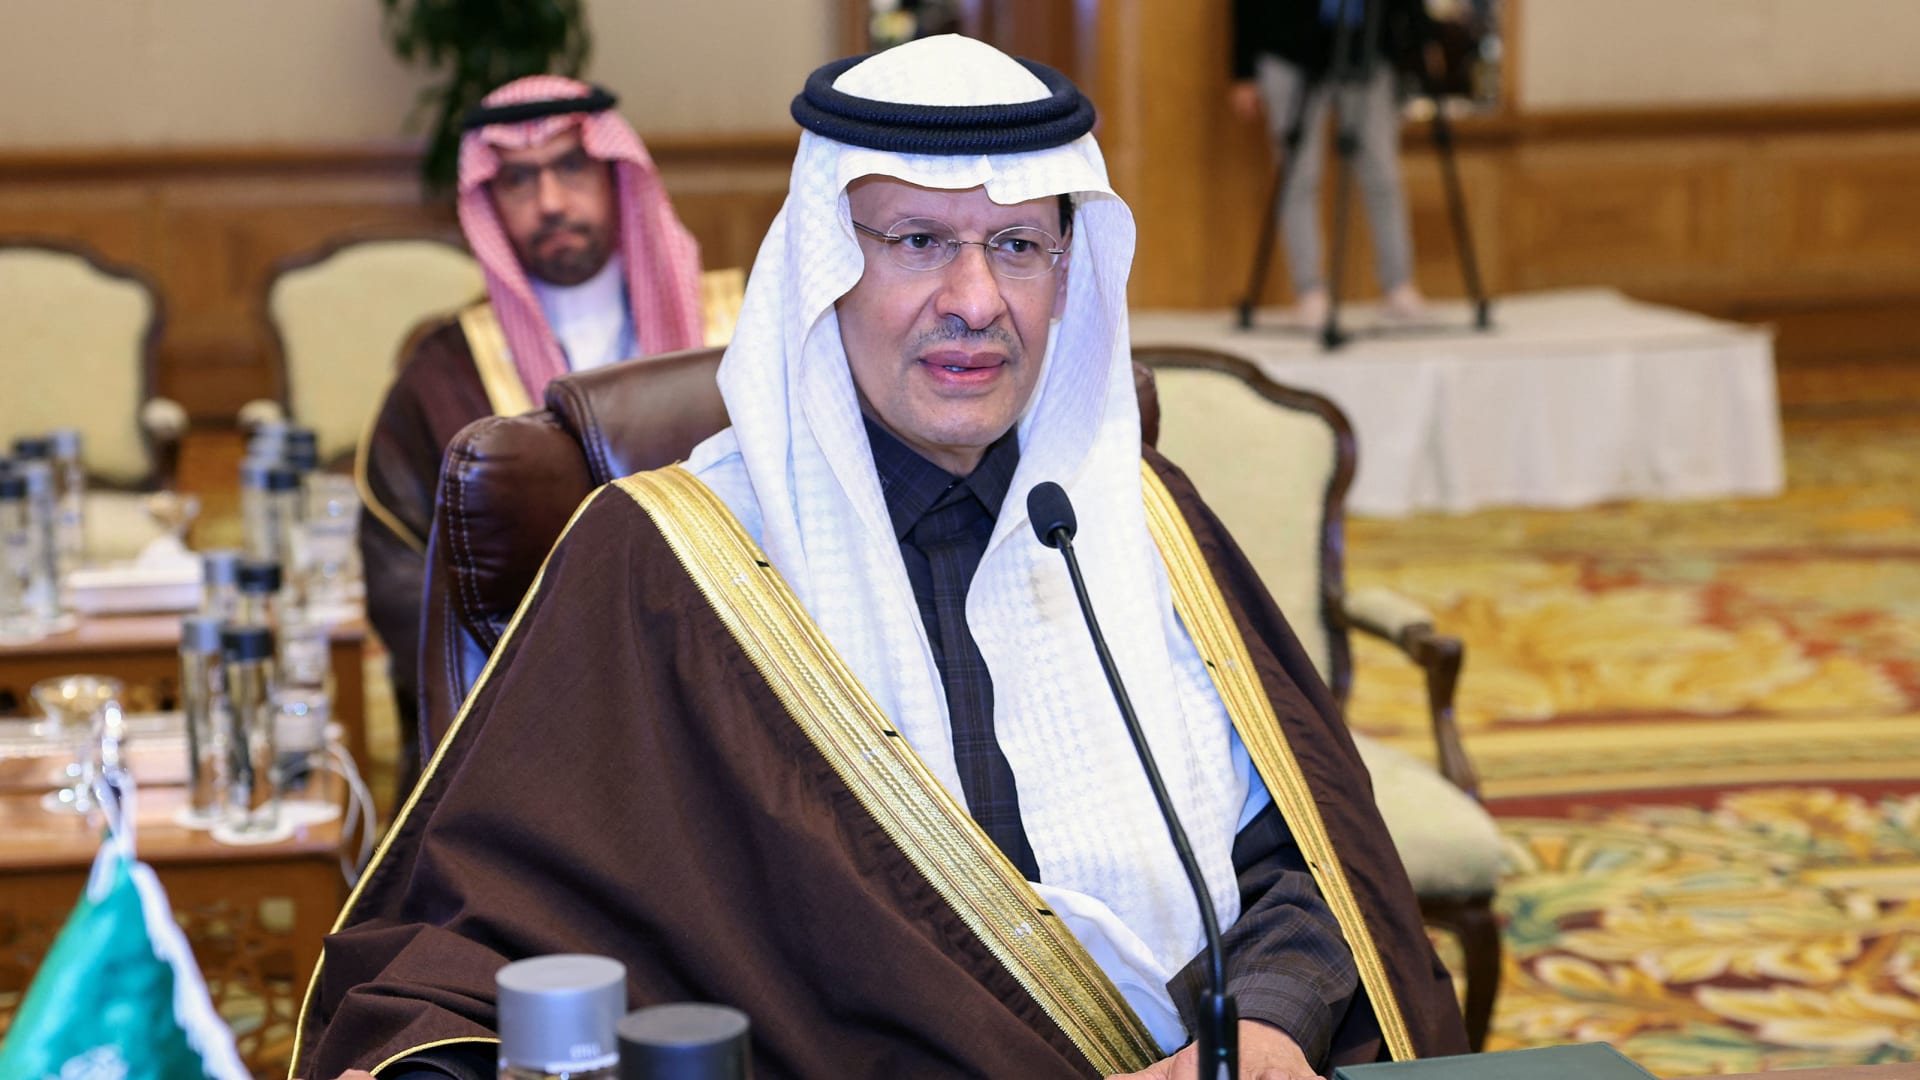 تحدي دول الخليج بين الاعتماد على النفط والغاز والانتقال للطاقة المتجددة